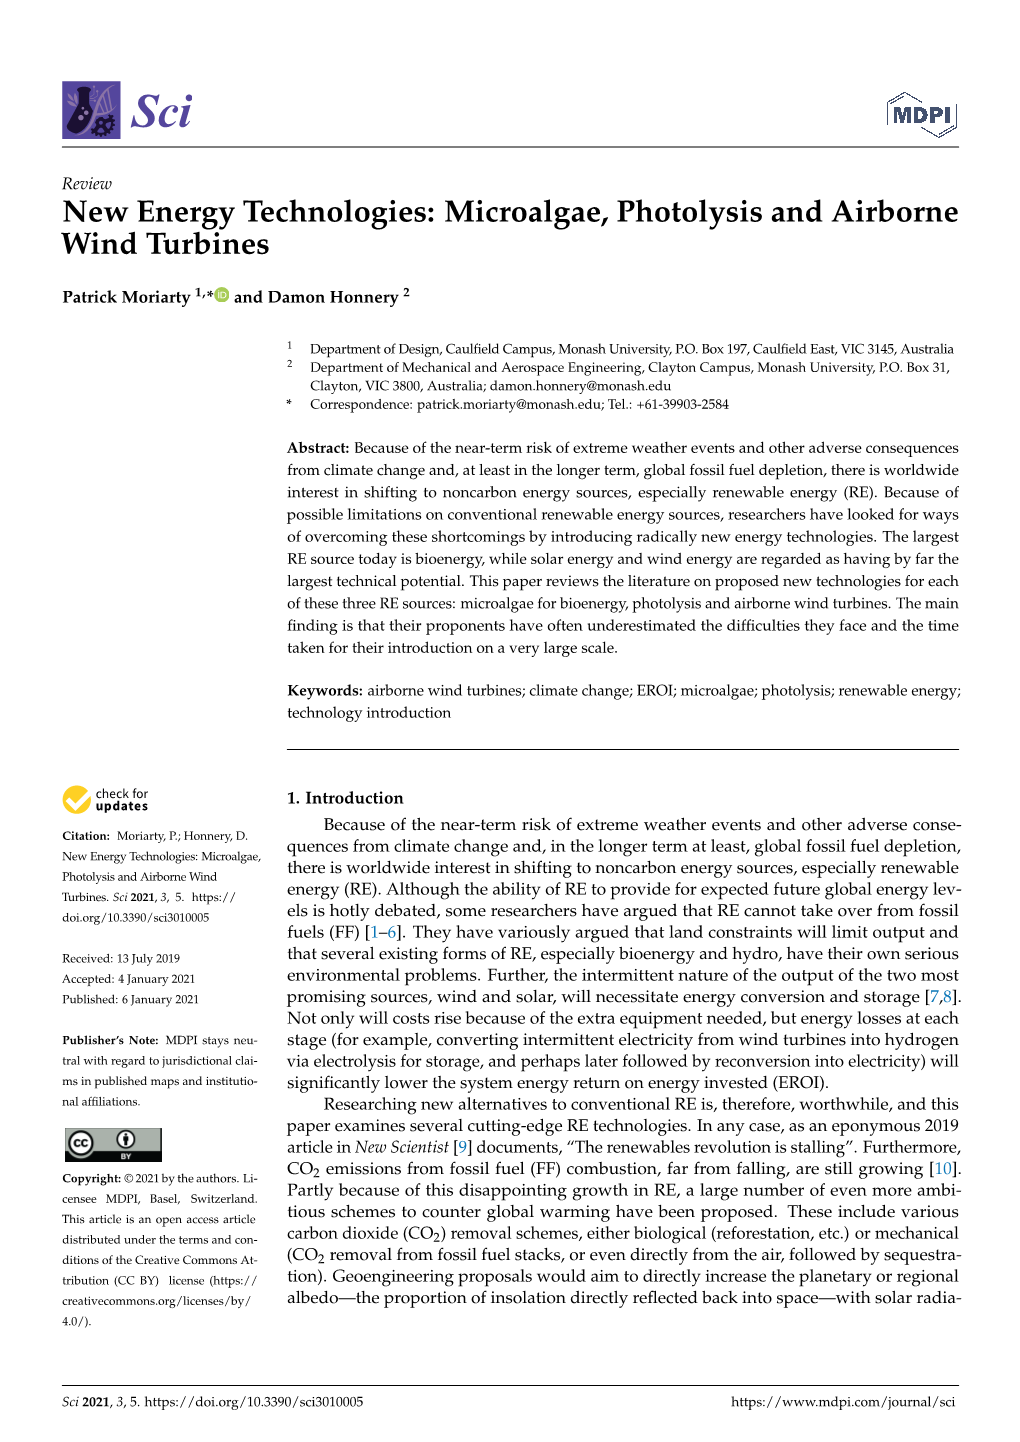 Microalgae, Photolysis and Airborne Wind Turbines